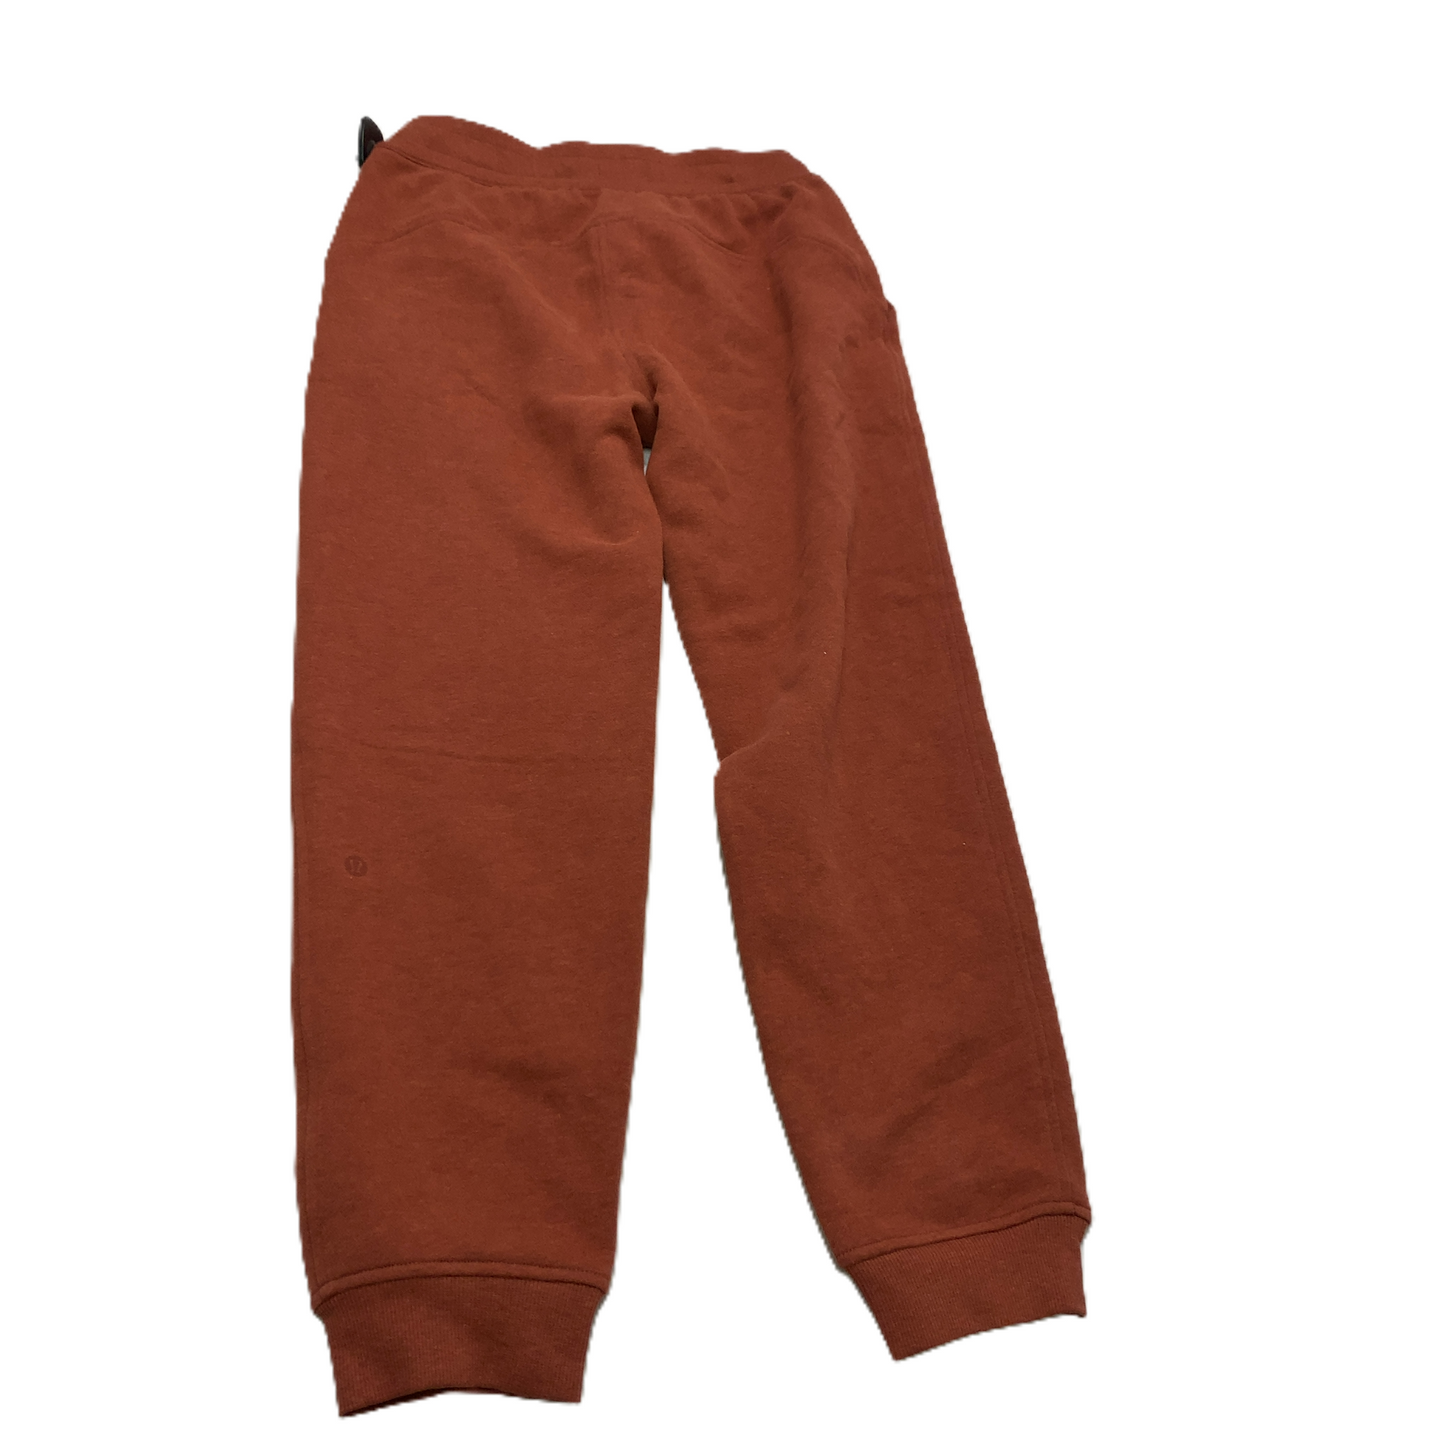 Orange  Athletic Pants By Lululemon  Size: S